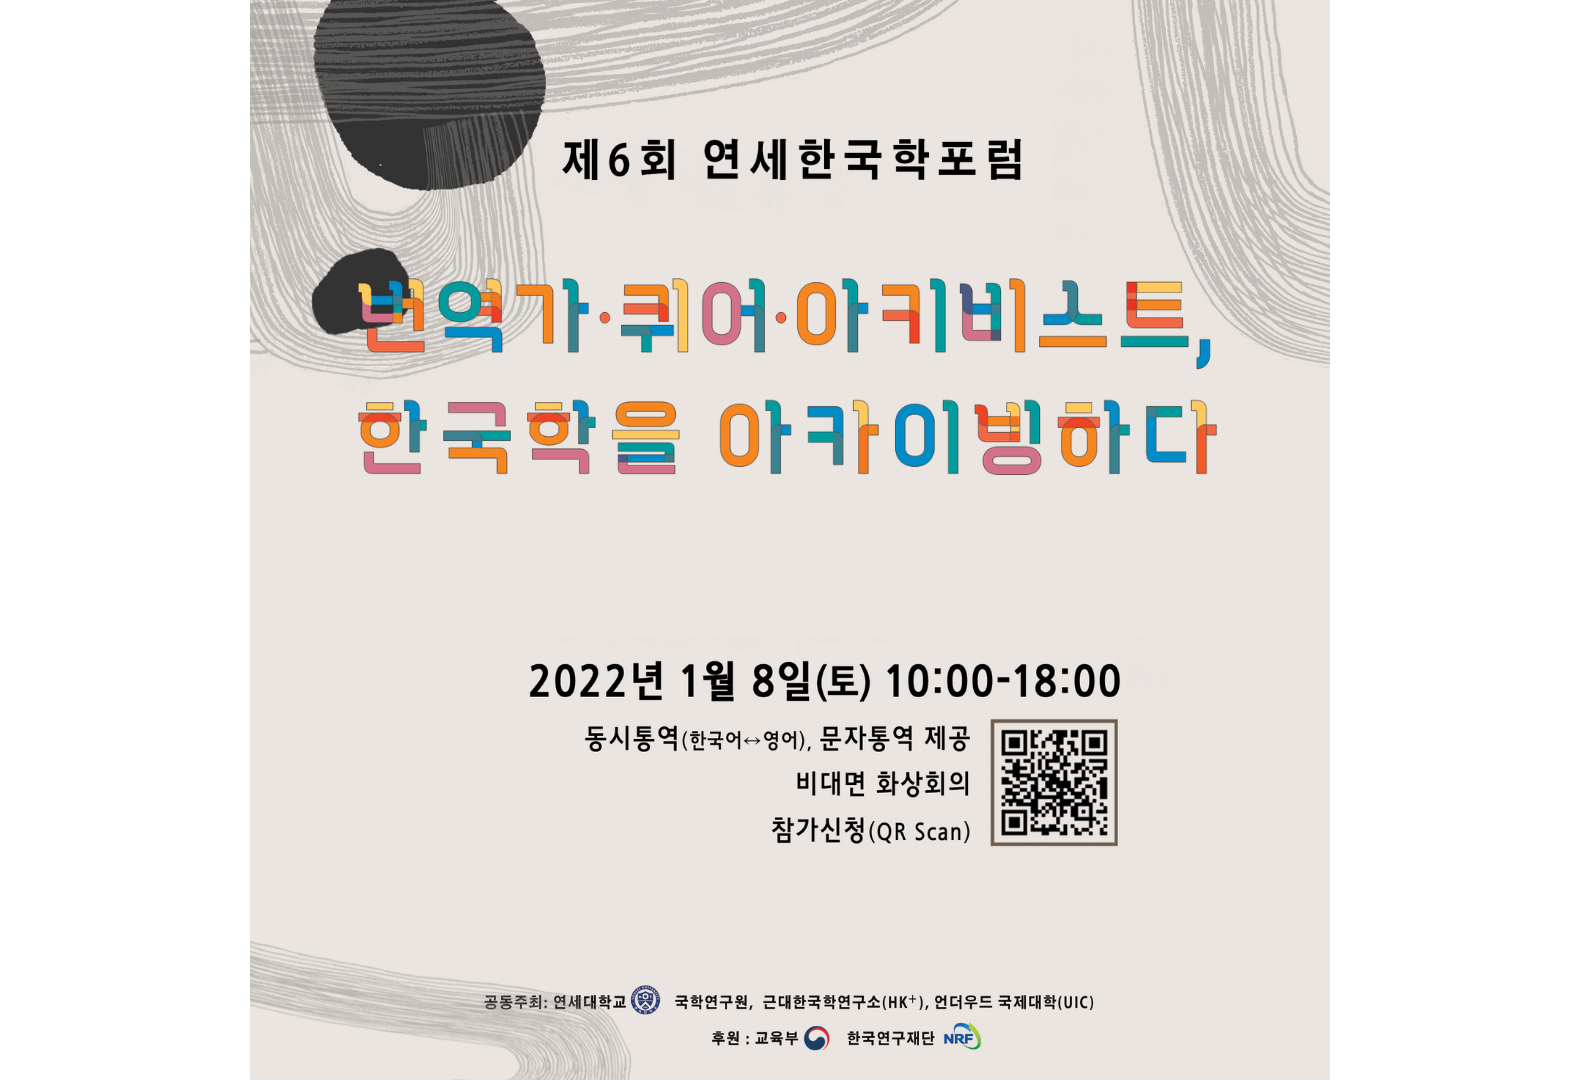 [2022. 1. 4.] 연세대학교 세 캠퍼스(신촌, 미래, 국제)의 한국학 기관, '제6회 연세한국학포럼' 공동 개최